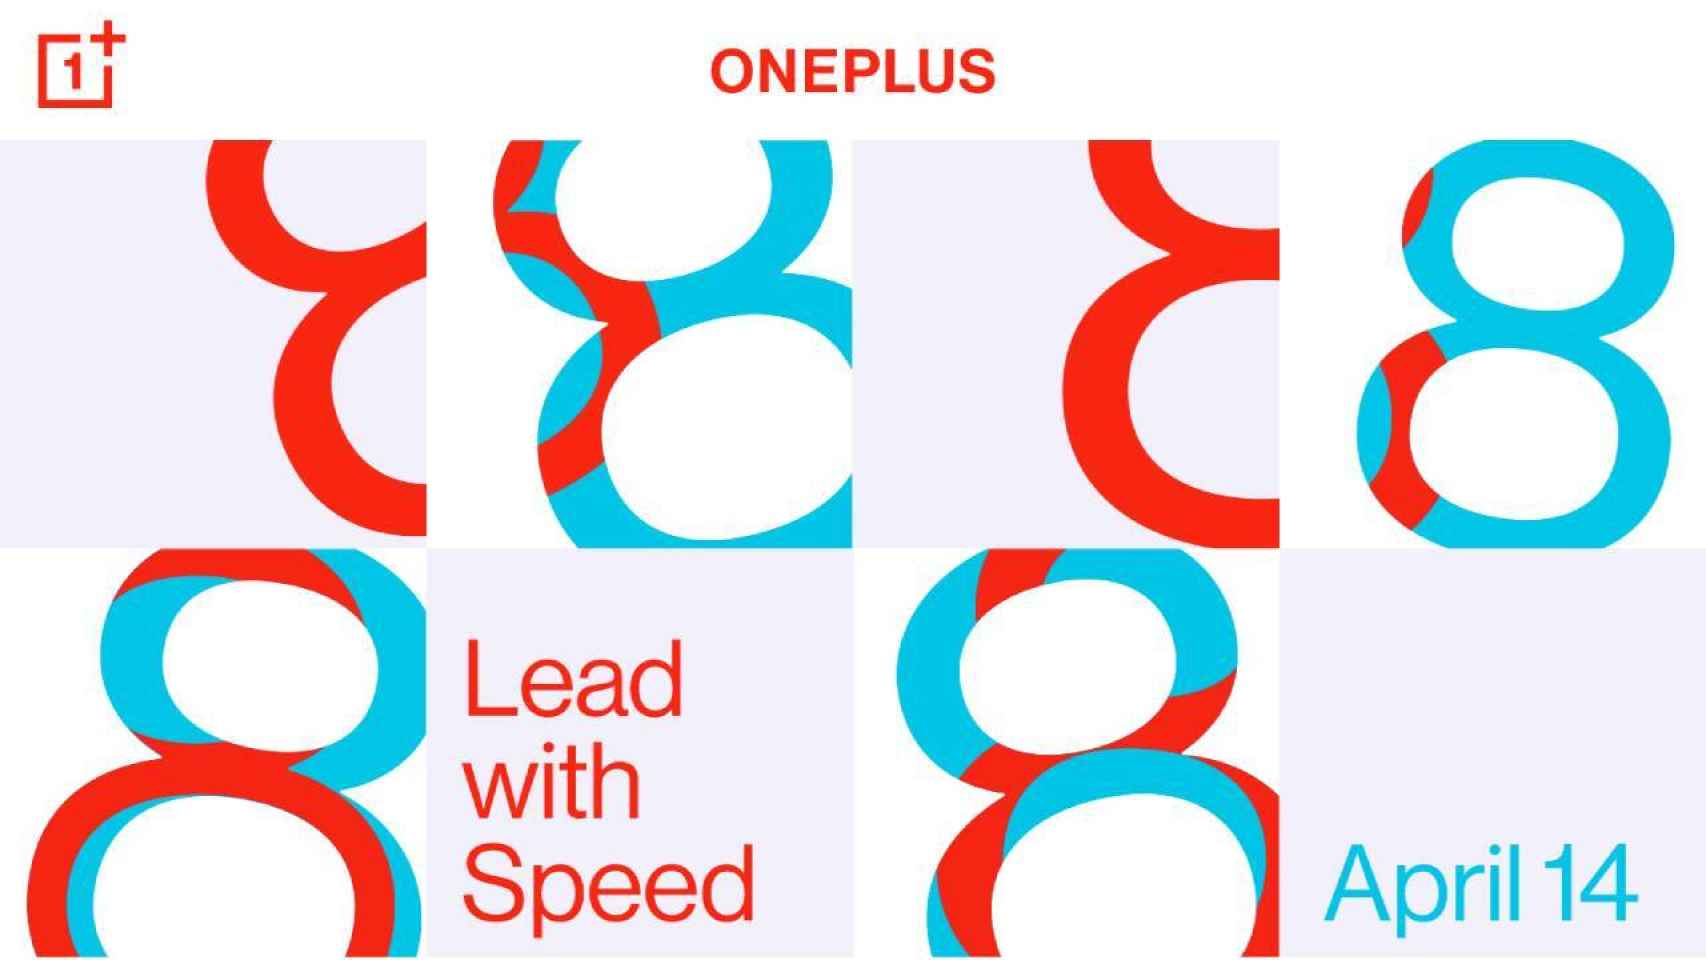 Los OnePlus 8 llegarán el 14 de abril